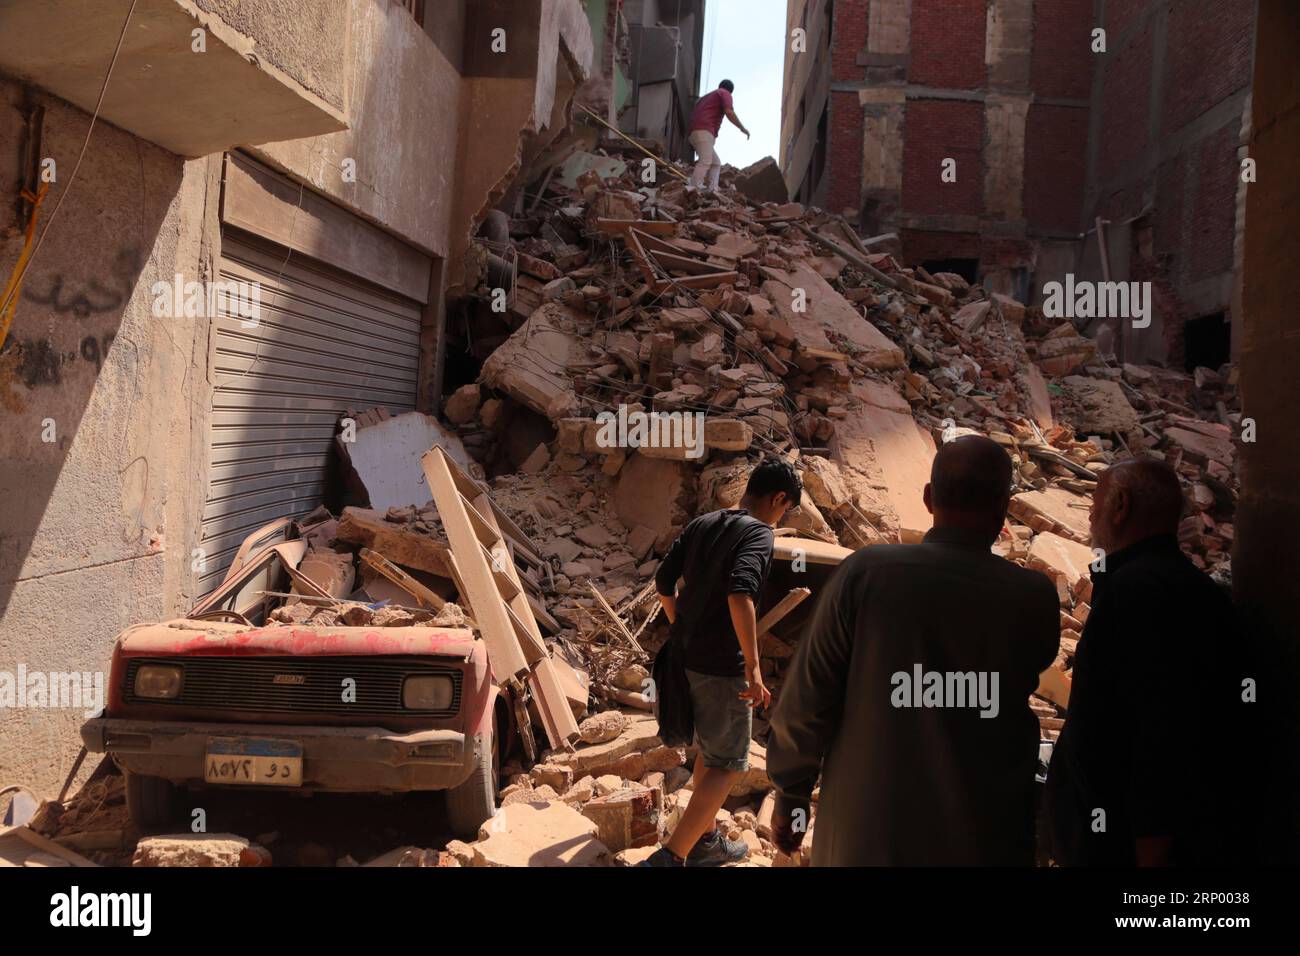 Gebäudeeinsturz à Gizeh (180410) -- LE CAIRE, LE 10 avril 2018 -- les gens se rassemblent près du site de l'effondrement du bâtiment à Gizeh, en Égypte, le 10 avril 2018. Un bâtiment s'est effondré à Gizeh mardi, causant des blessures à quatre personnes. (Zjl) EGYPT-GIZEH-BUILDING COLLAPSE AhmedxGomaa PUBLICATIONxNOTxINxCHN Banque D'Images